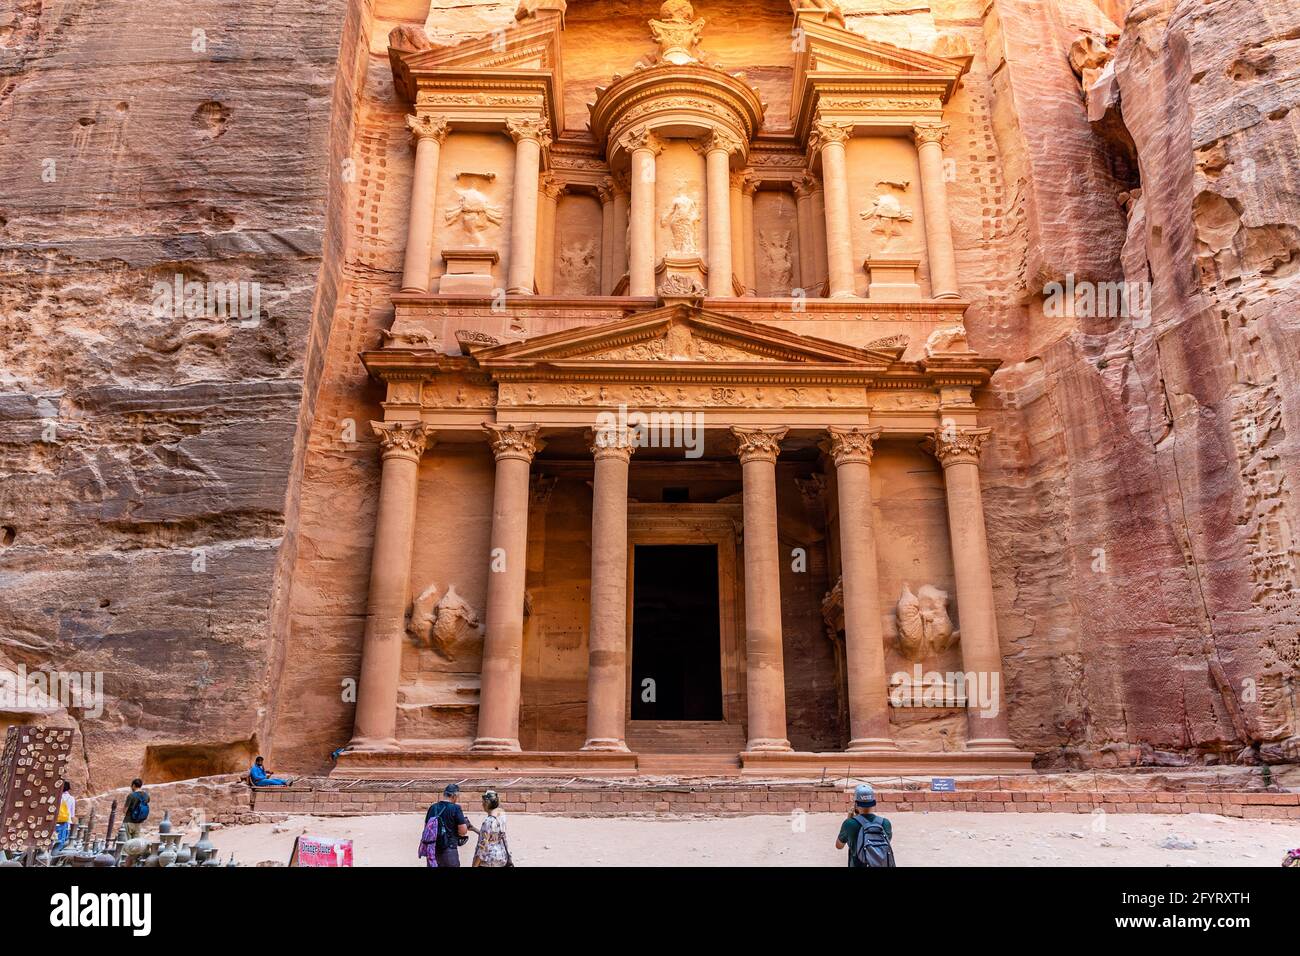 Vista frontal completa del Tesoro, Al-Khazneh tocado por patrones de erosión, una de las siete maravillas del mundo antiguo fue tallada en piedra de rosa roja, Petra Foto de stock